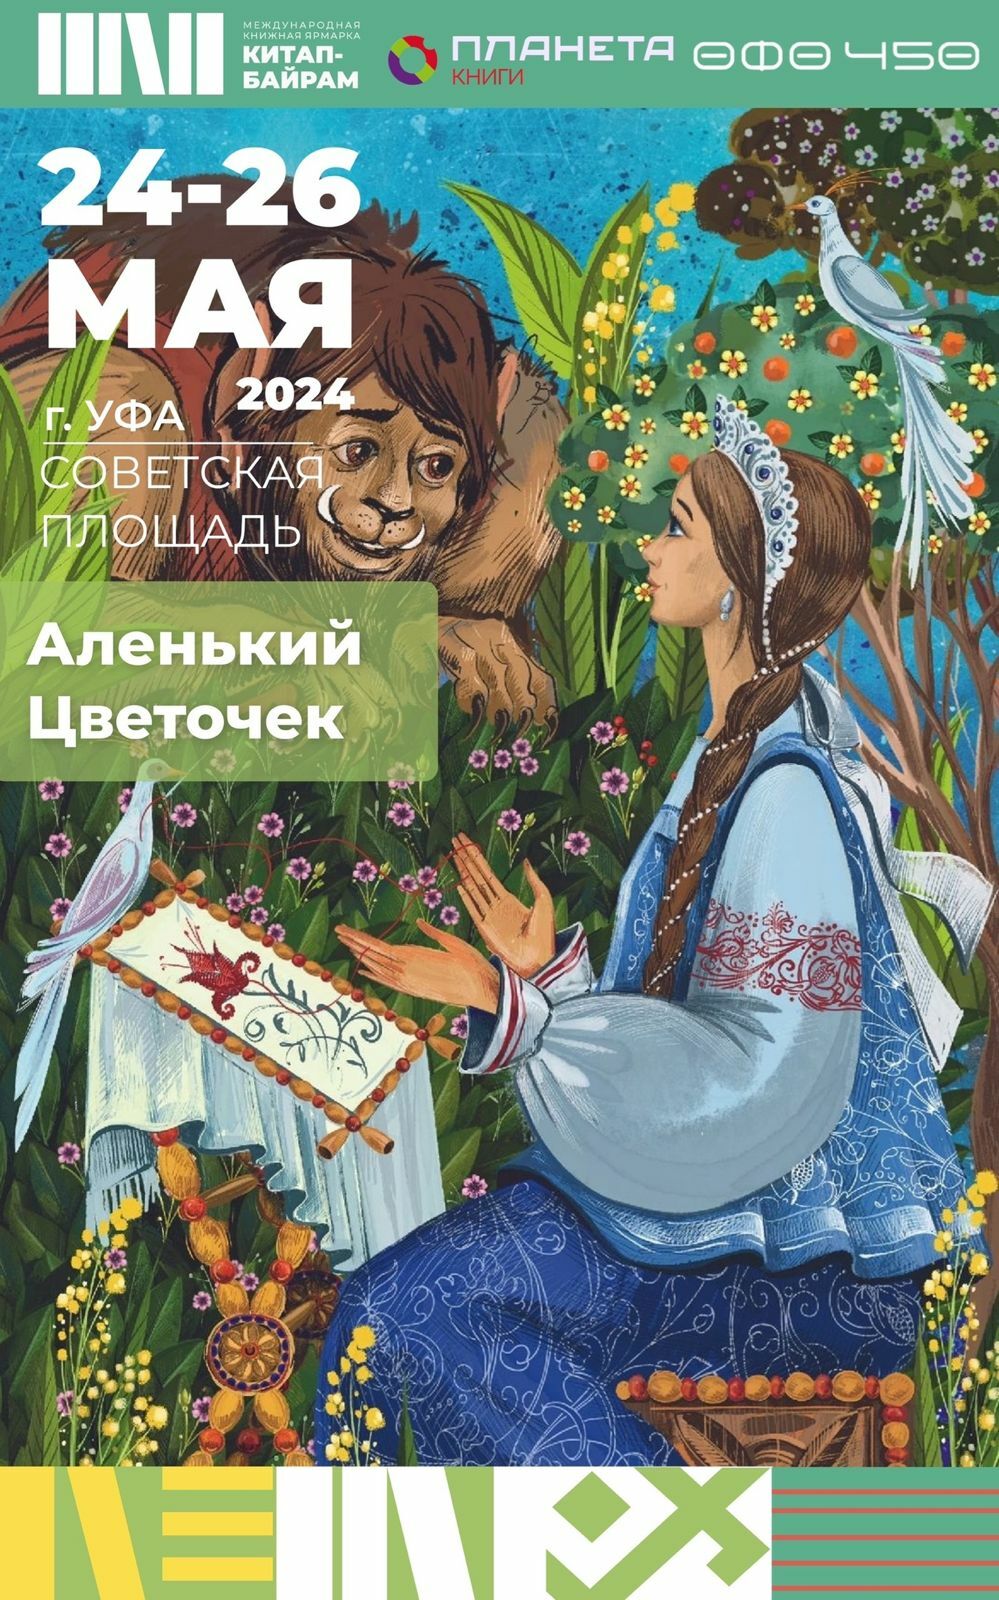 В Уфе на ярмарке Китап-байрам представят уникальное издание книги Аленький цветочек